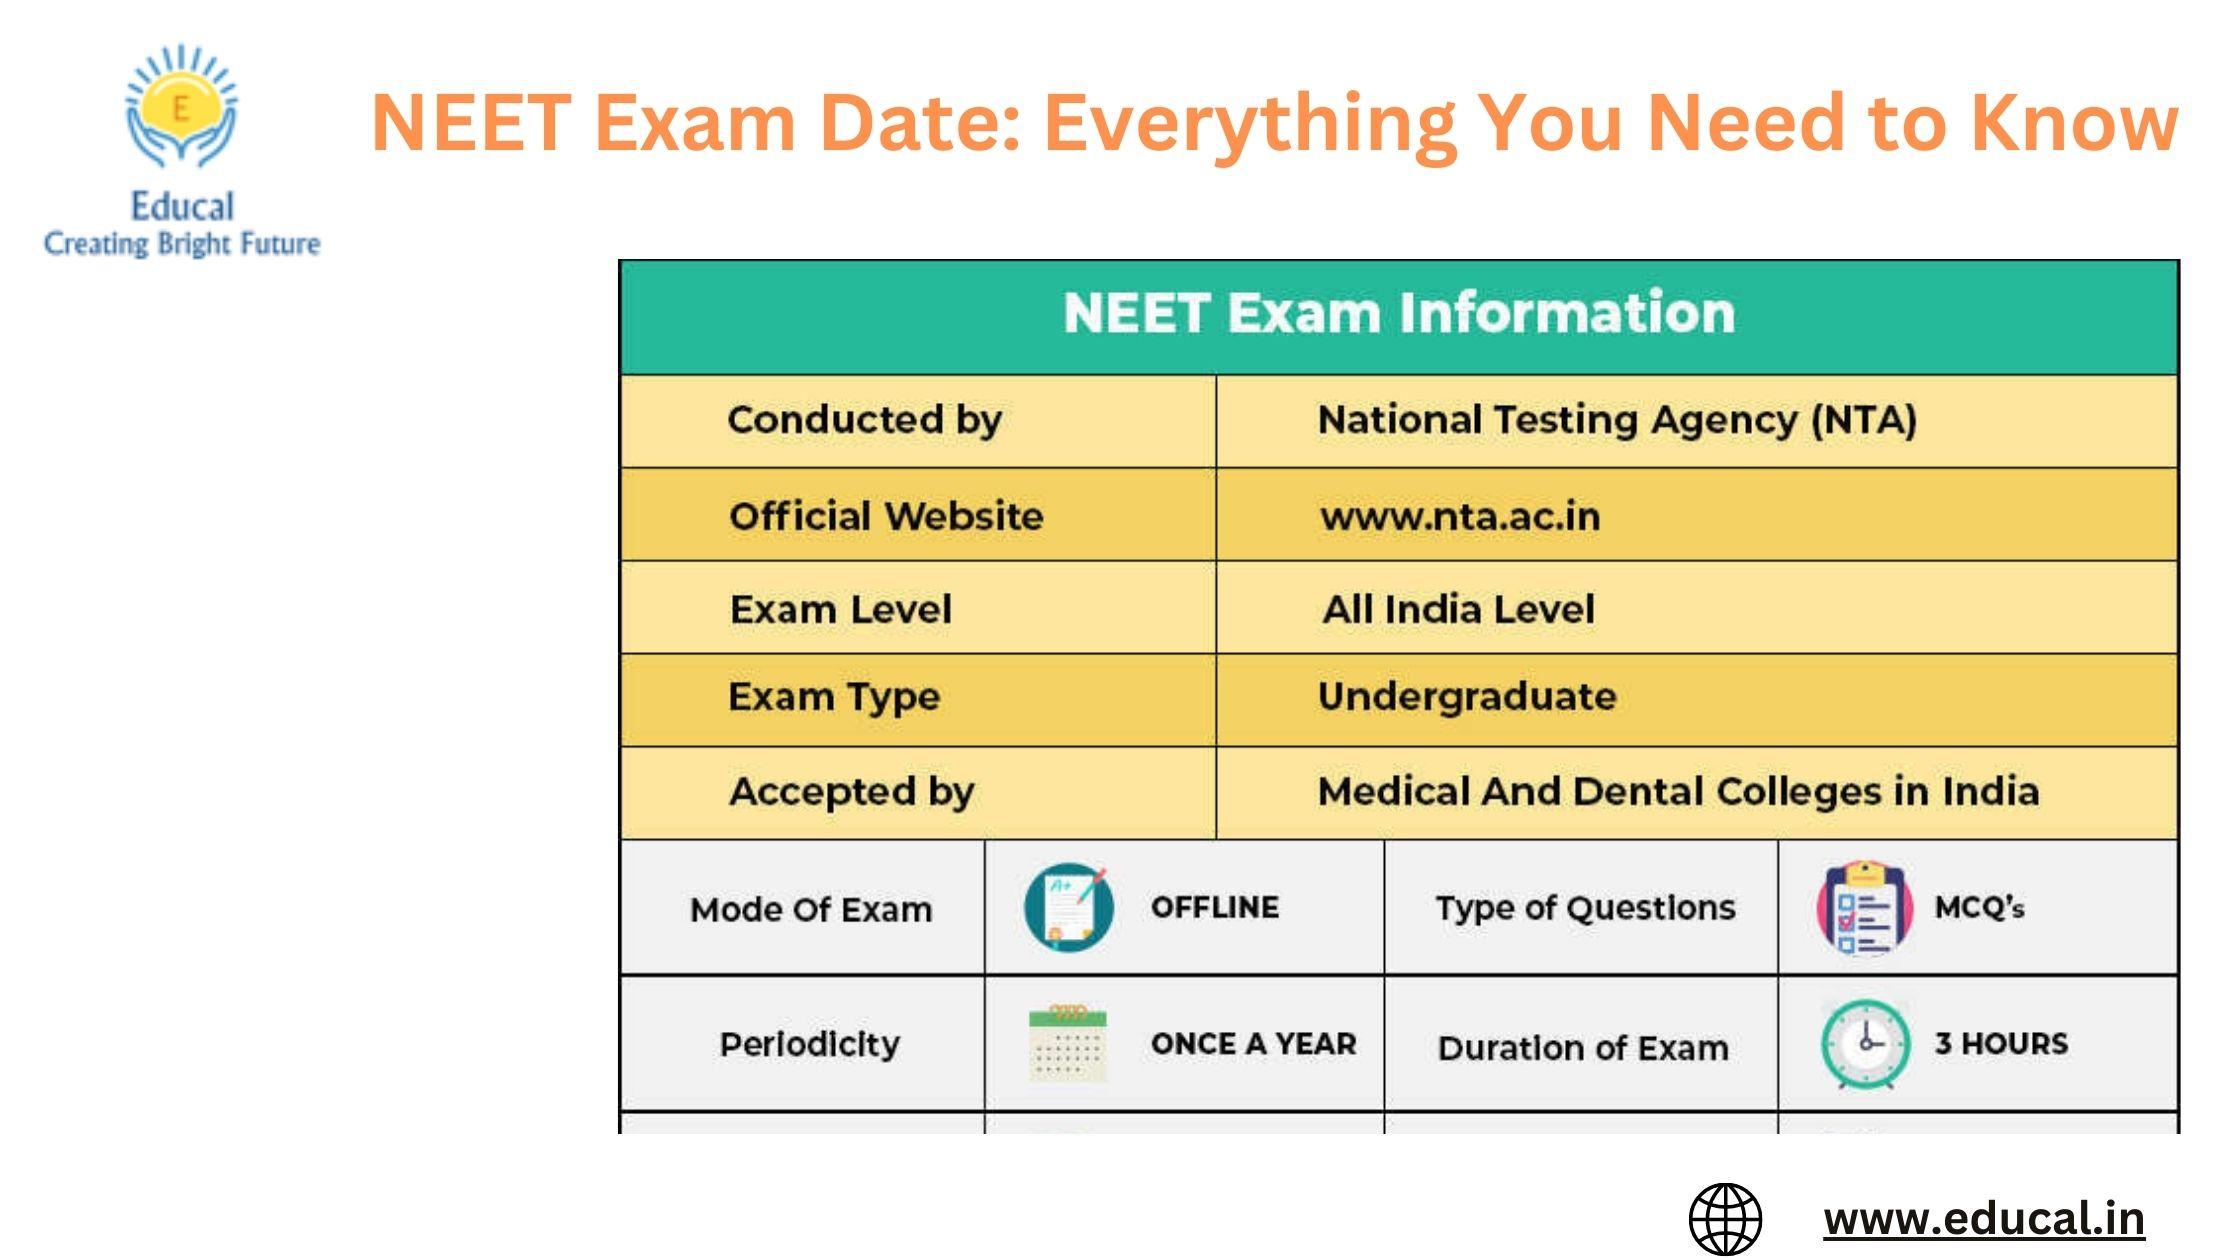 neet exam result